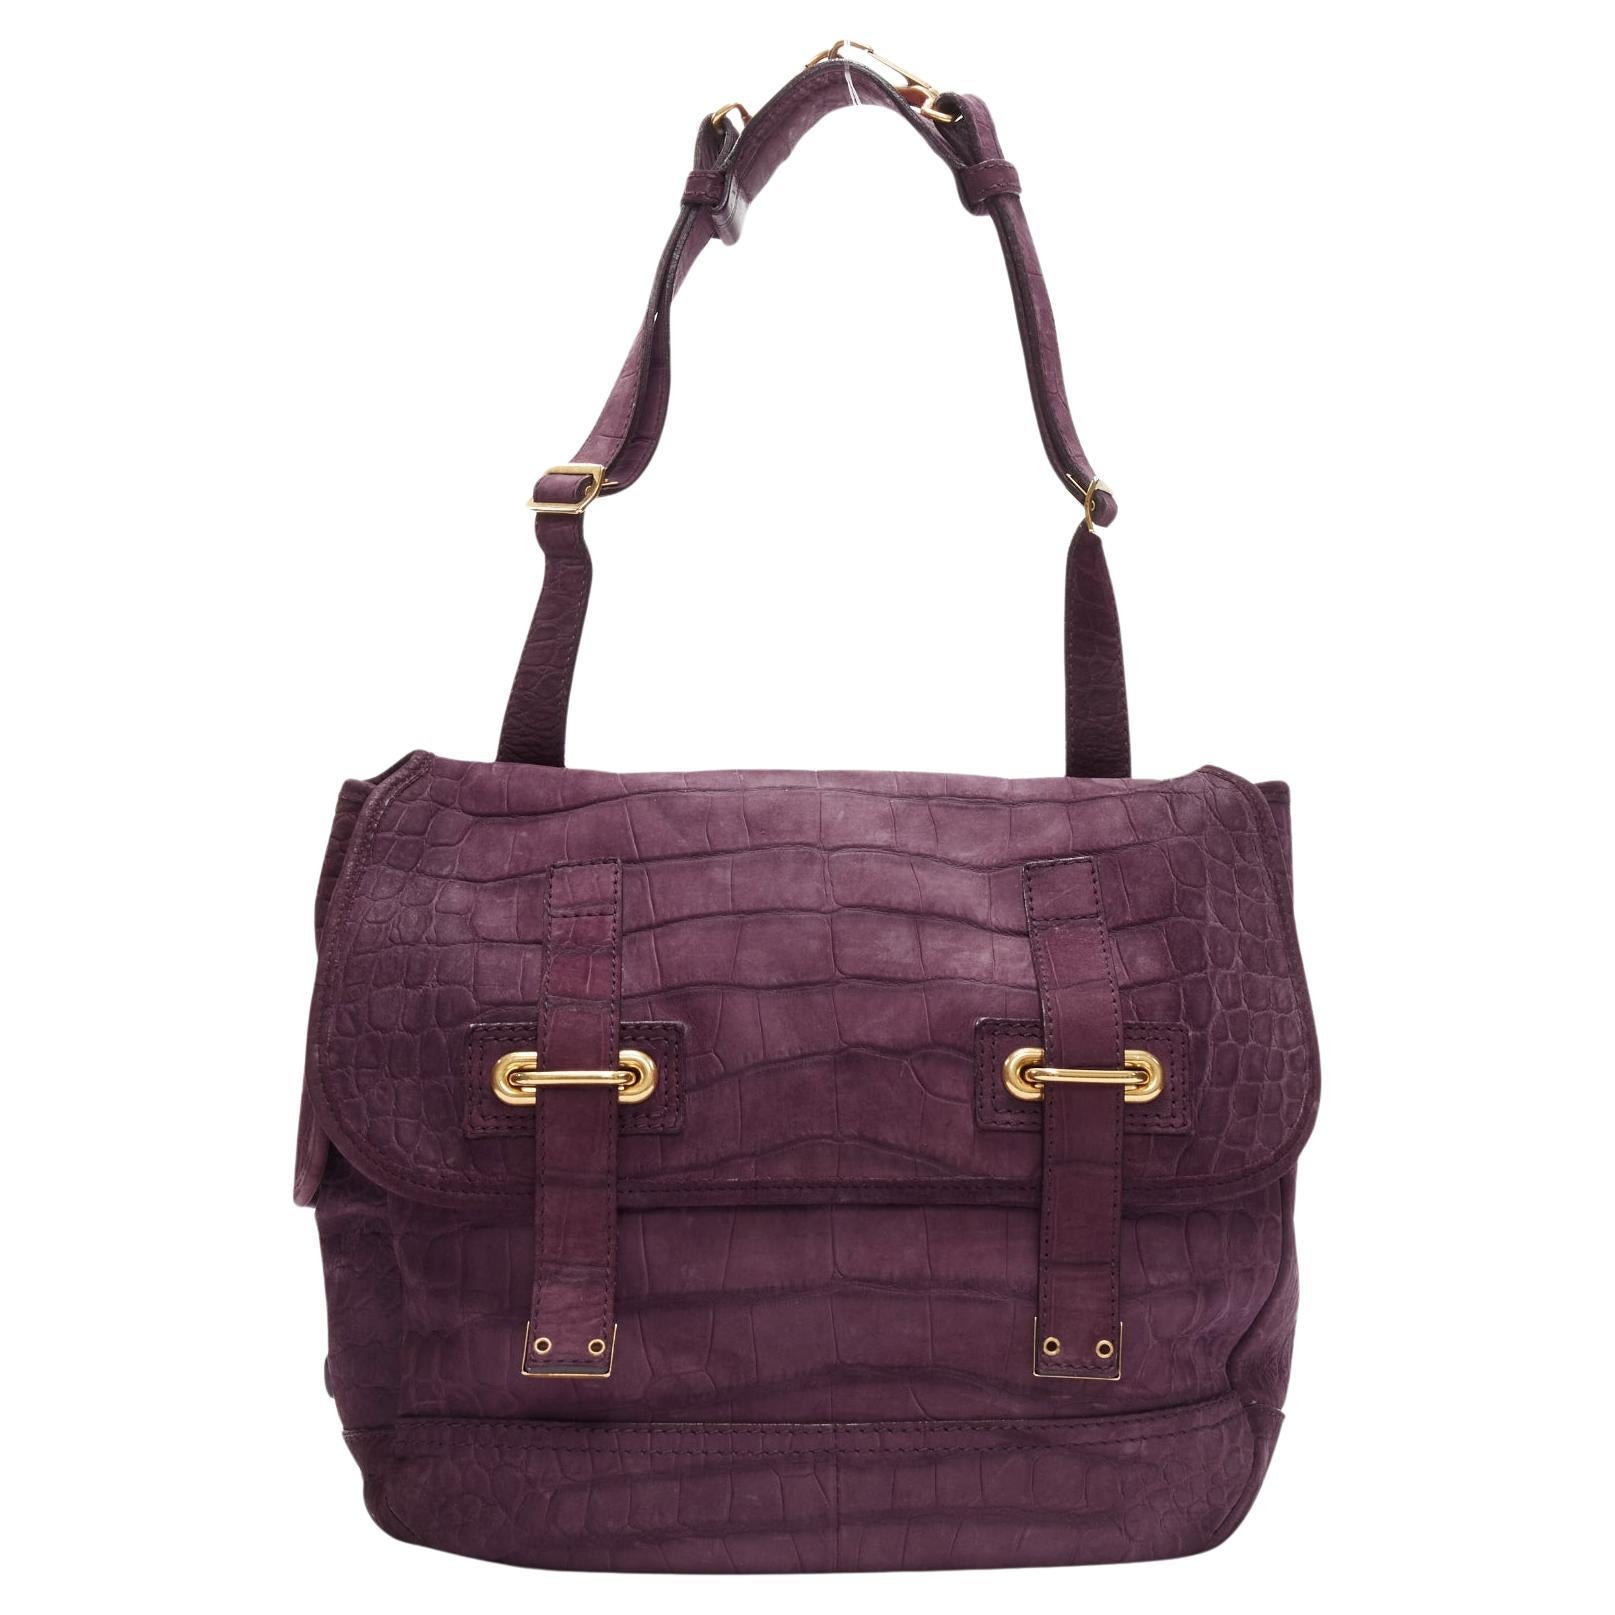 YVES SAINT LAURENT Rive Gauche Besace purple matte leather messenger bag